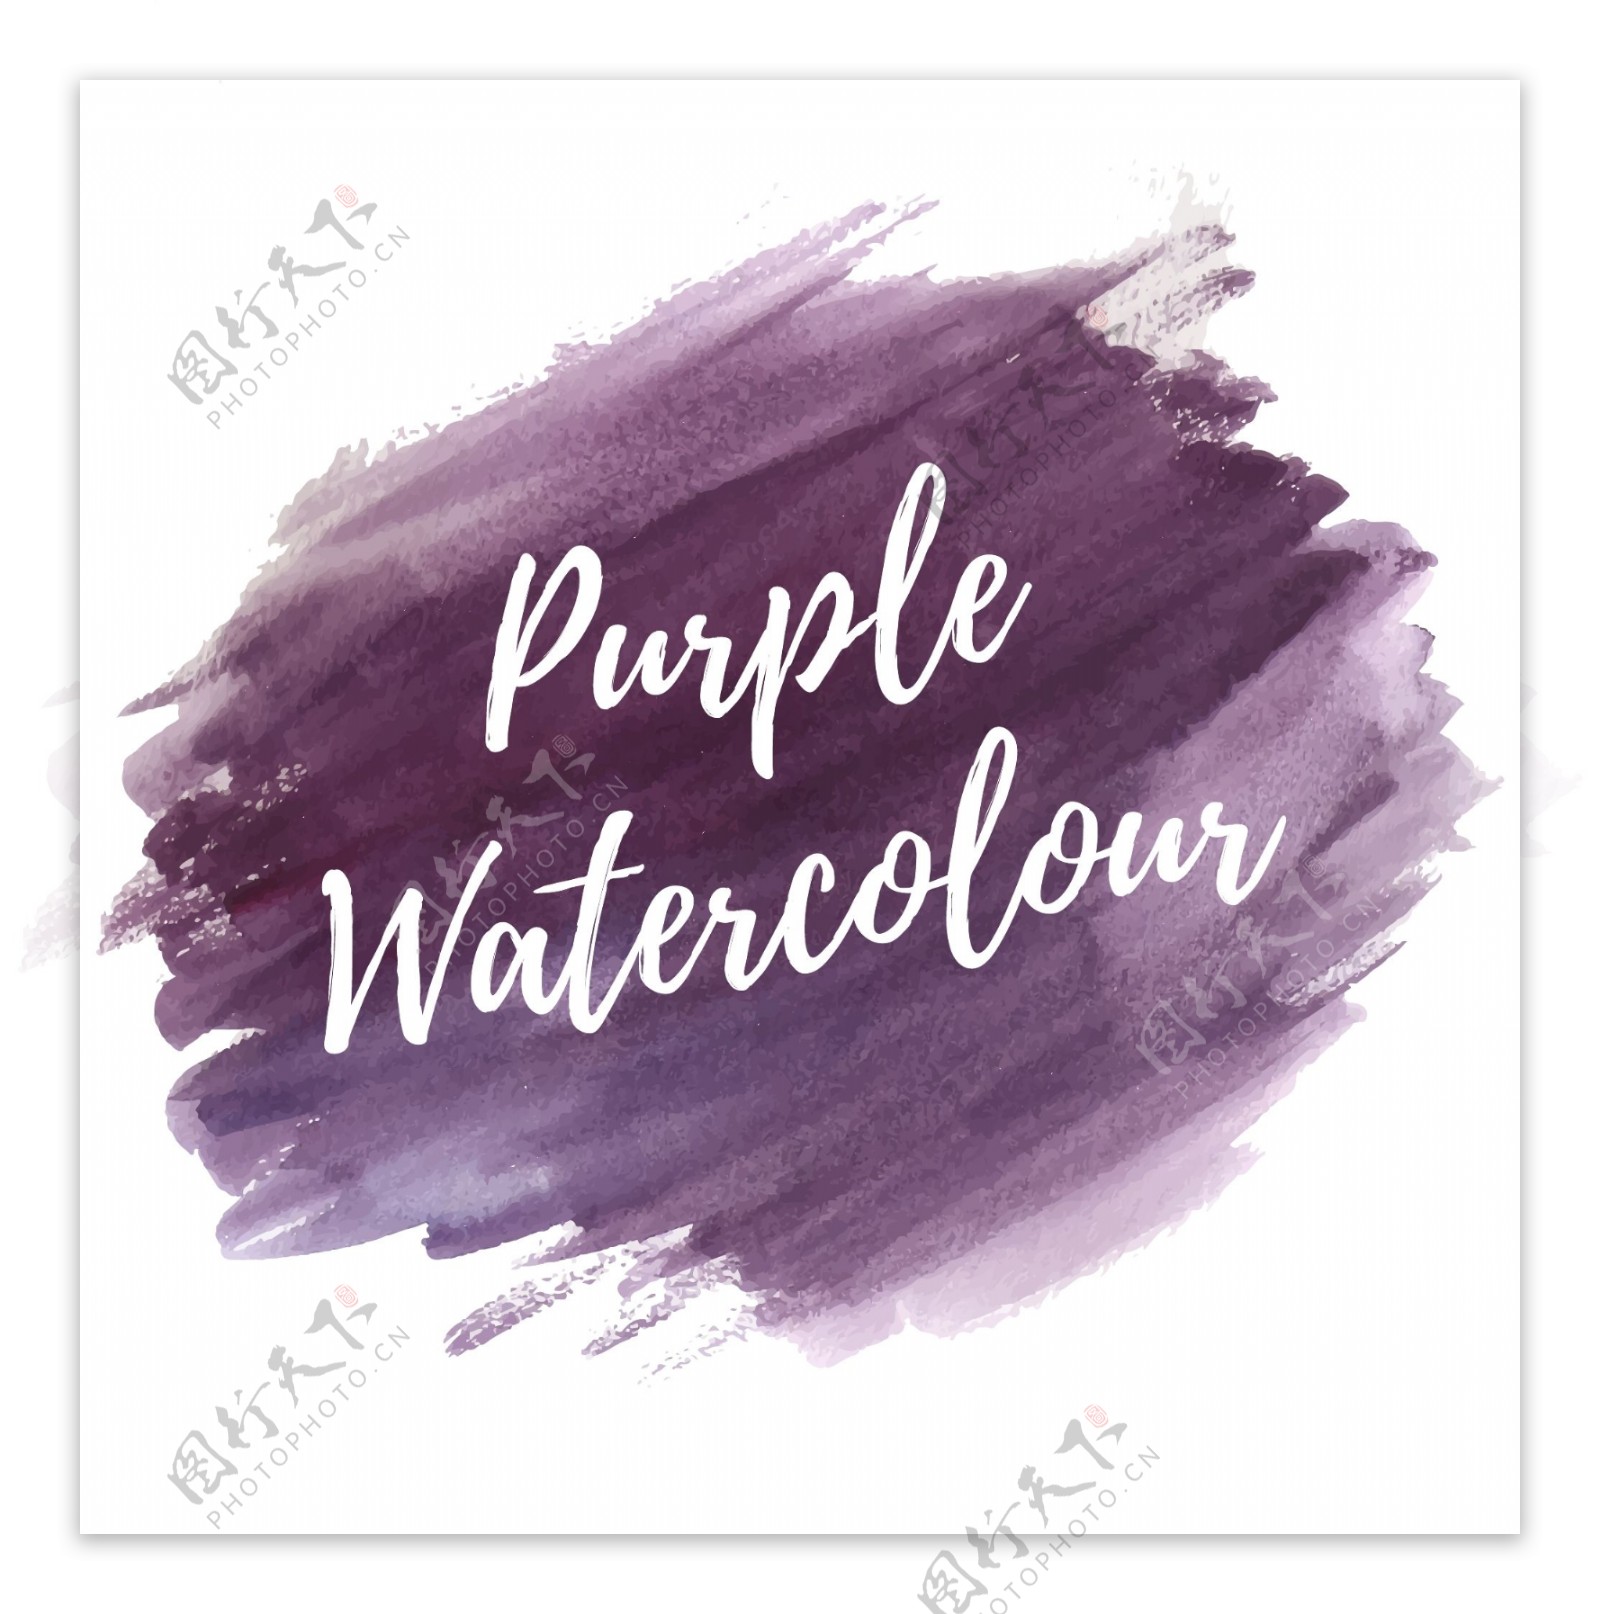 紫色水彩笔触背景